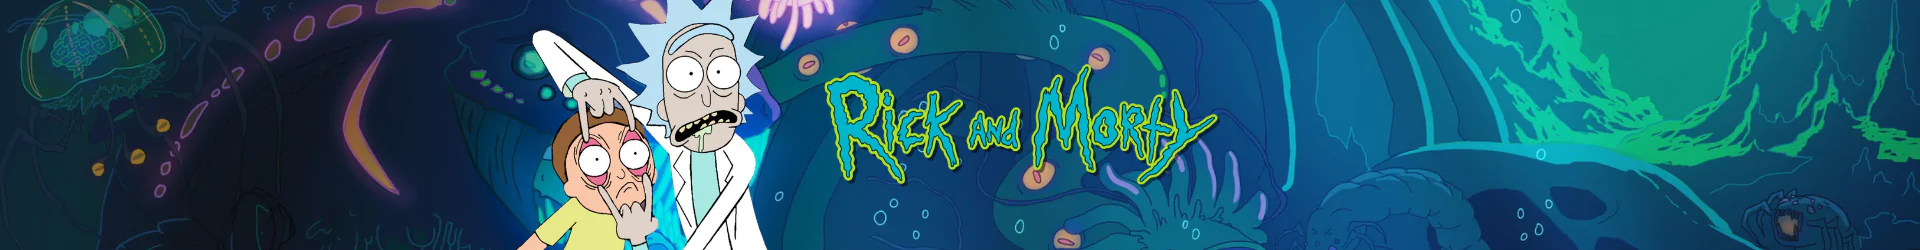 Rick and Morty geschenkpackungen banner